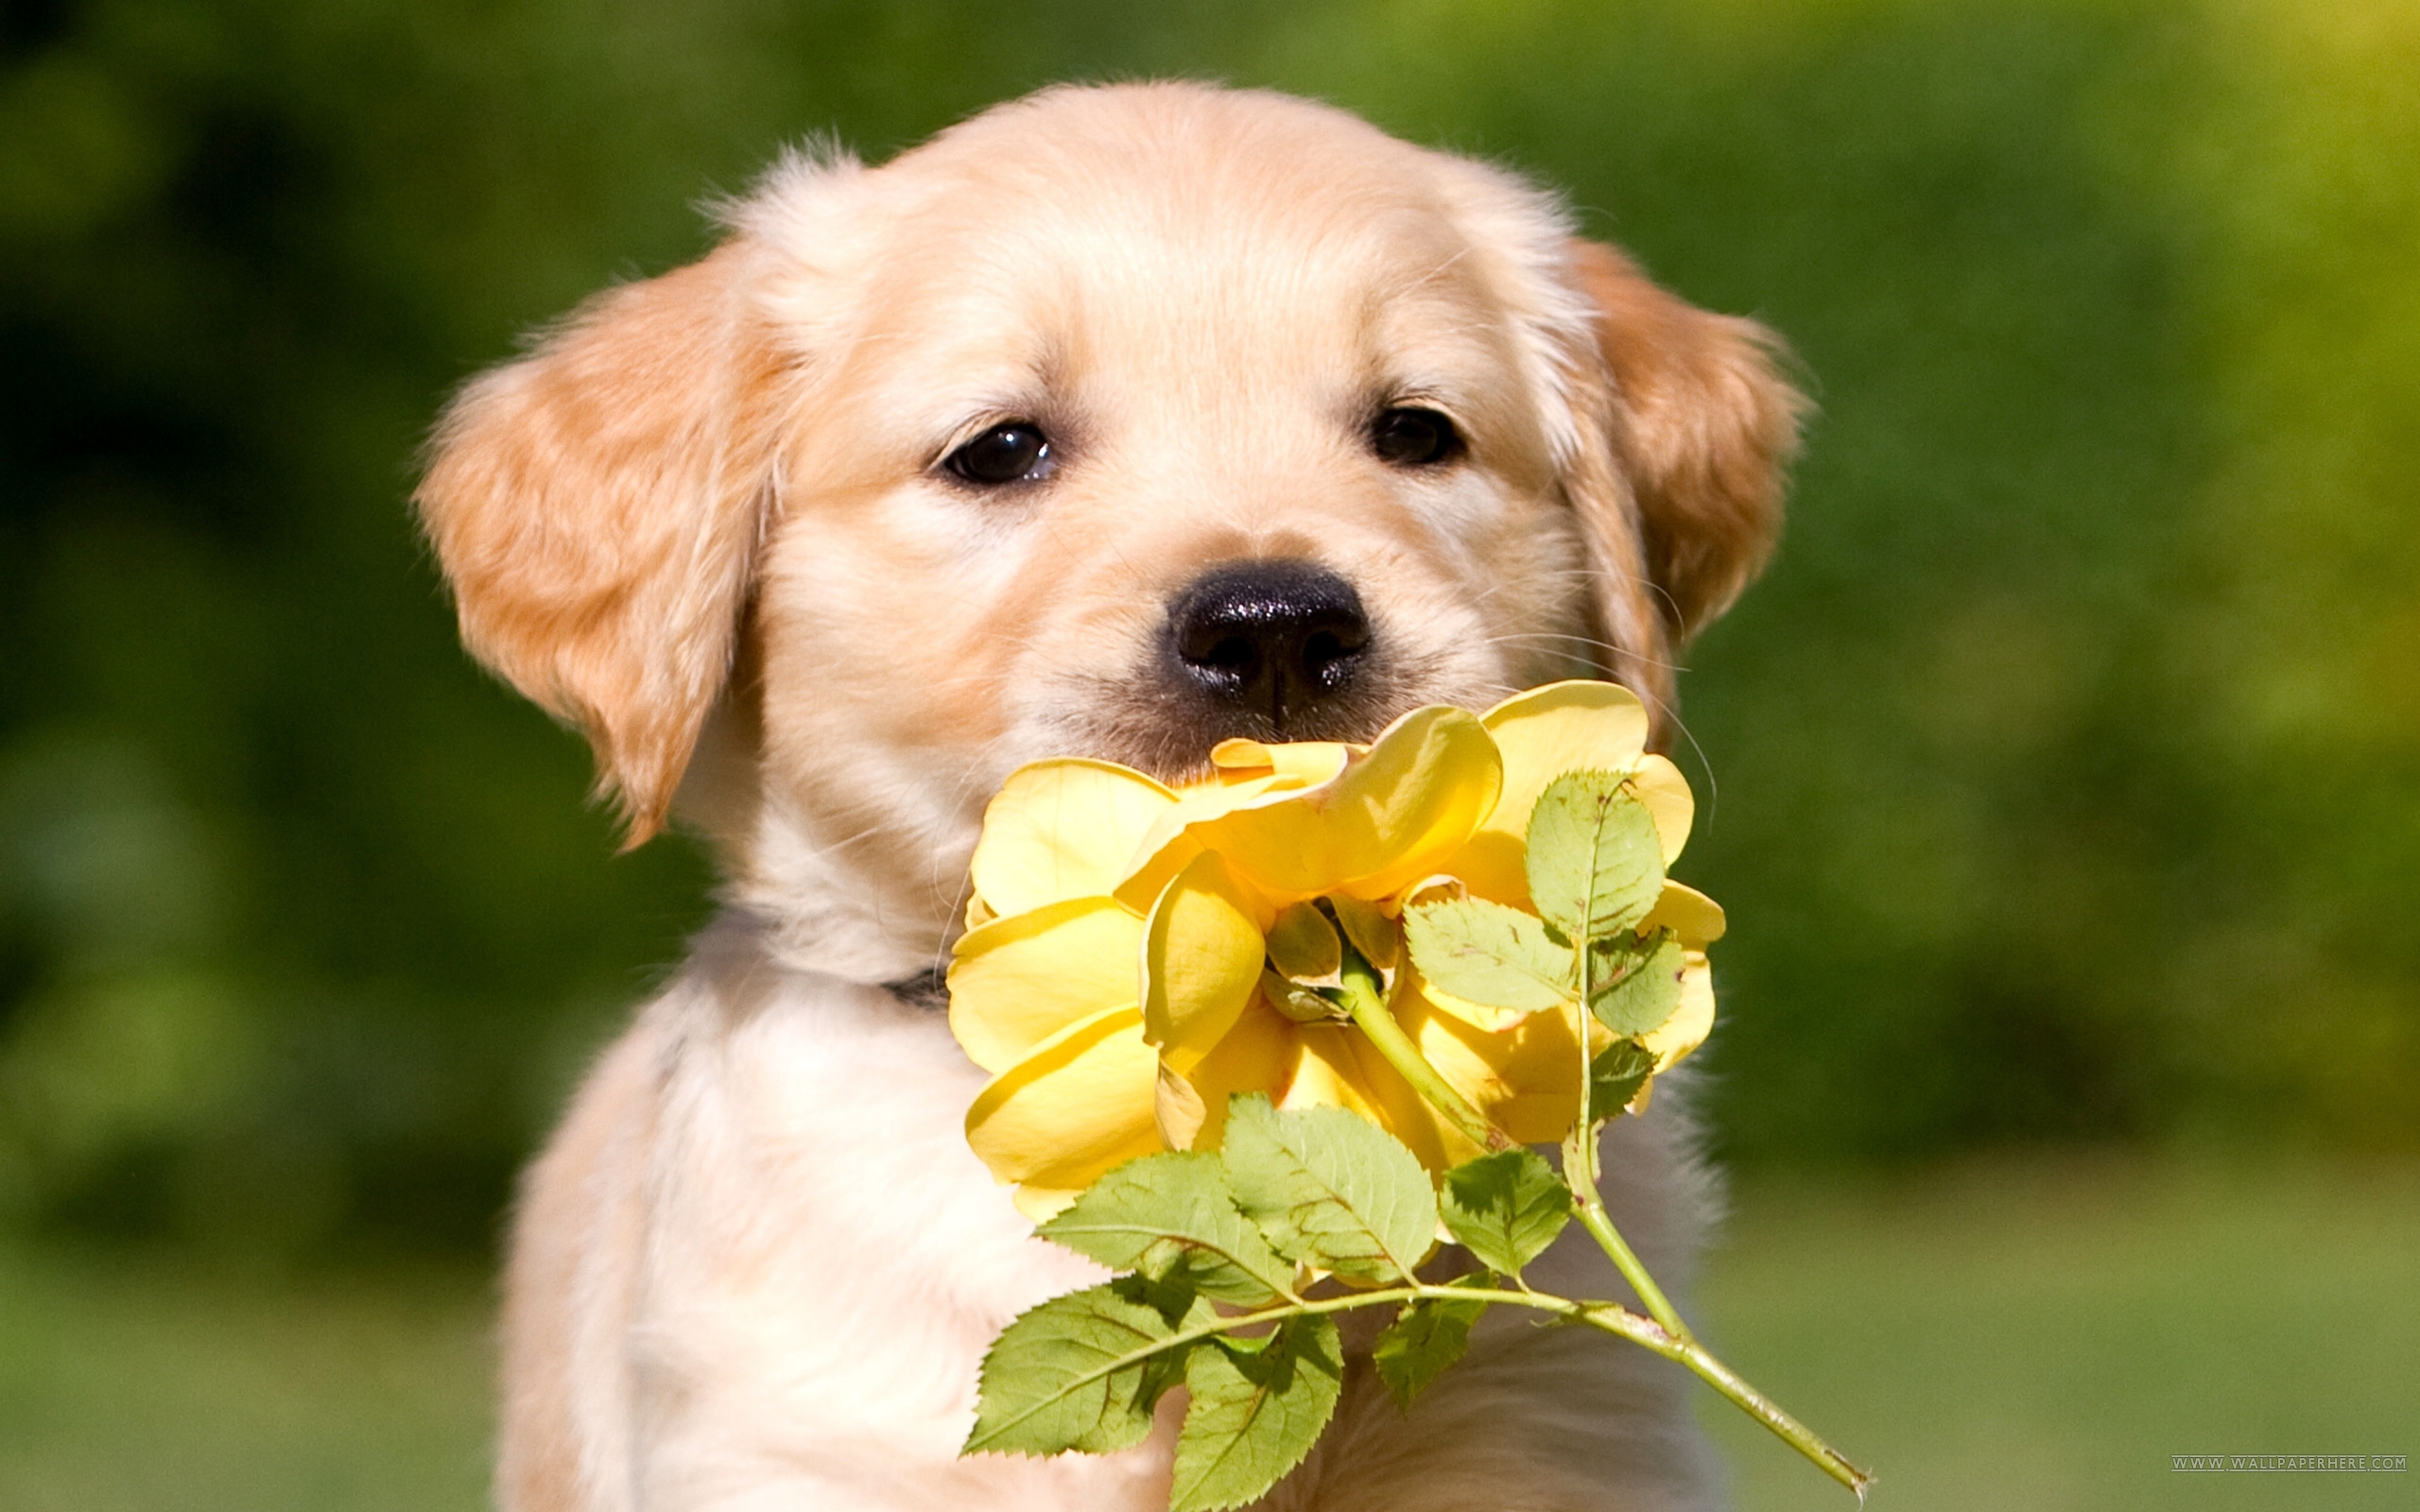 Chó con Golden Retriever là loại chó đáng yêu và hết sức dễ thương. Nếu bạn đang tìm kiếm nền ảnh chó con Golden Retriever cao độ, hãy đến với chúng tôi. Những hình nền này sẽ chắc chắn đem lại cảm giác vui tươi và thỏa mãn cho bạn.